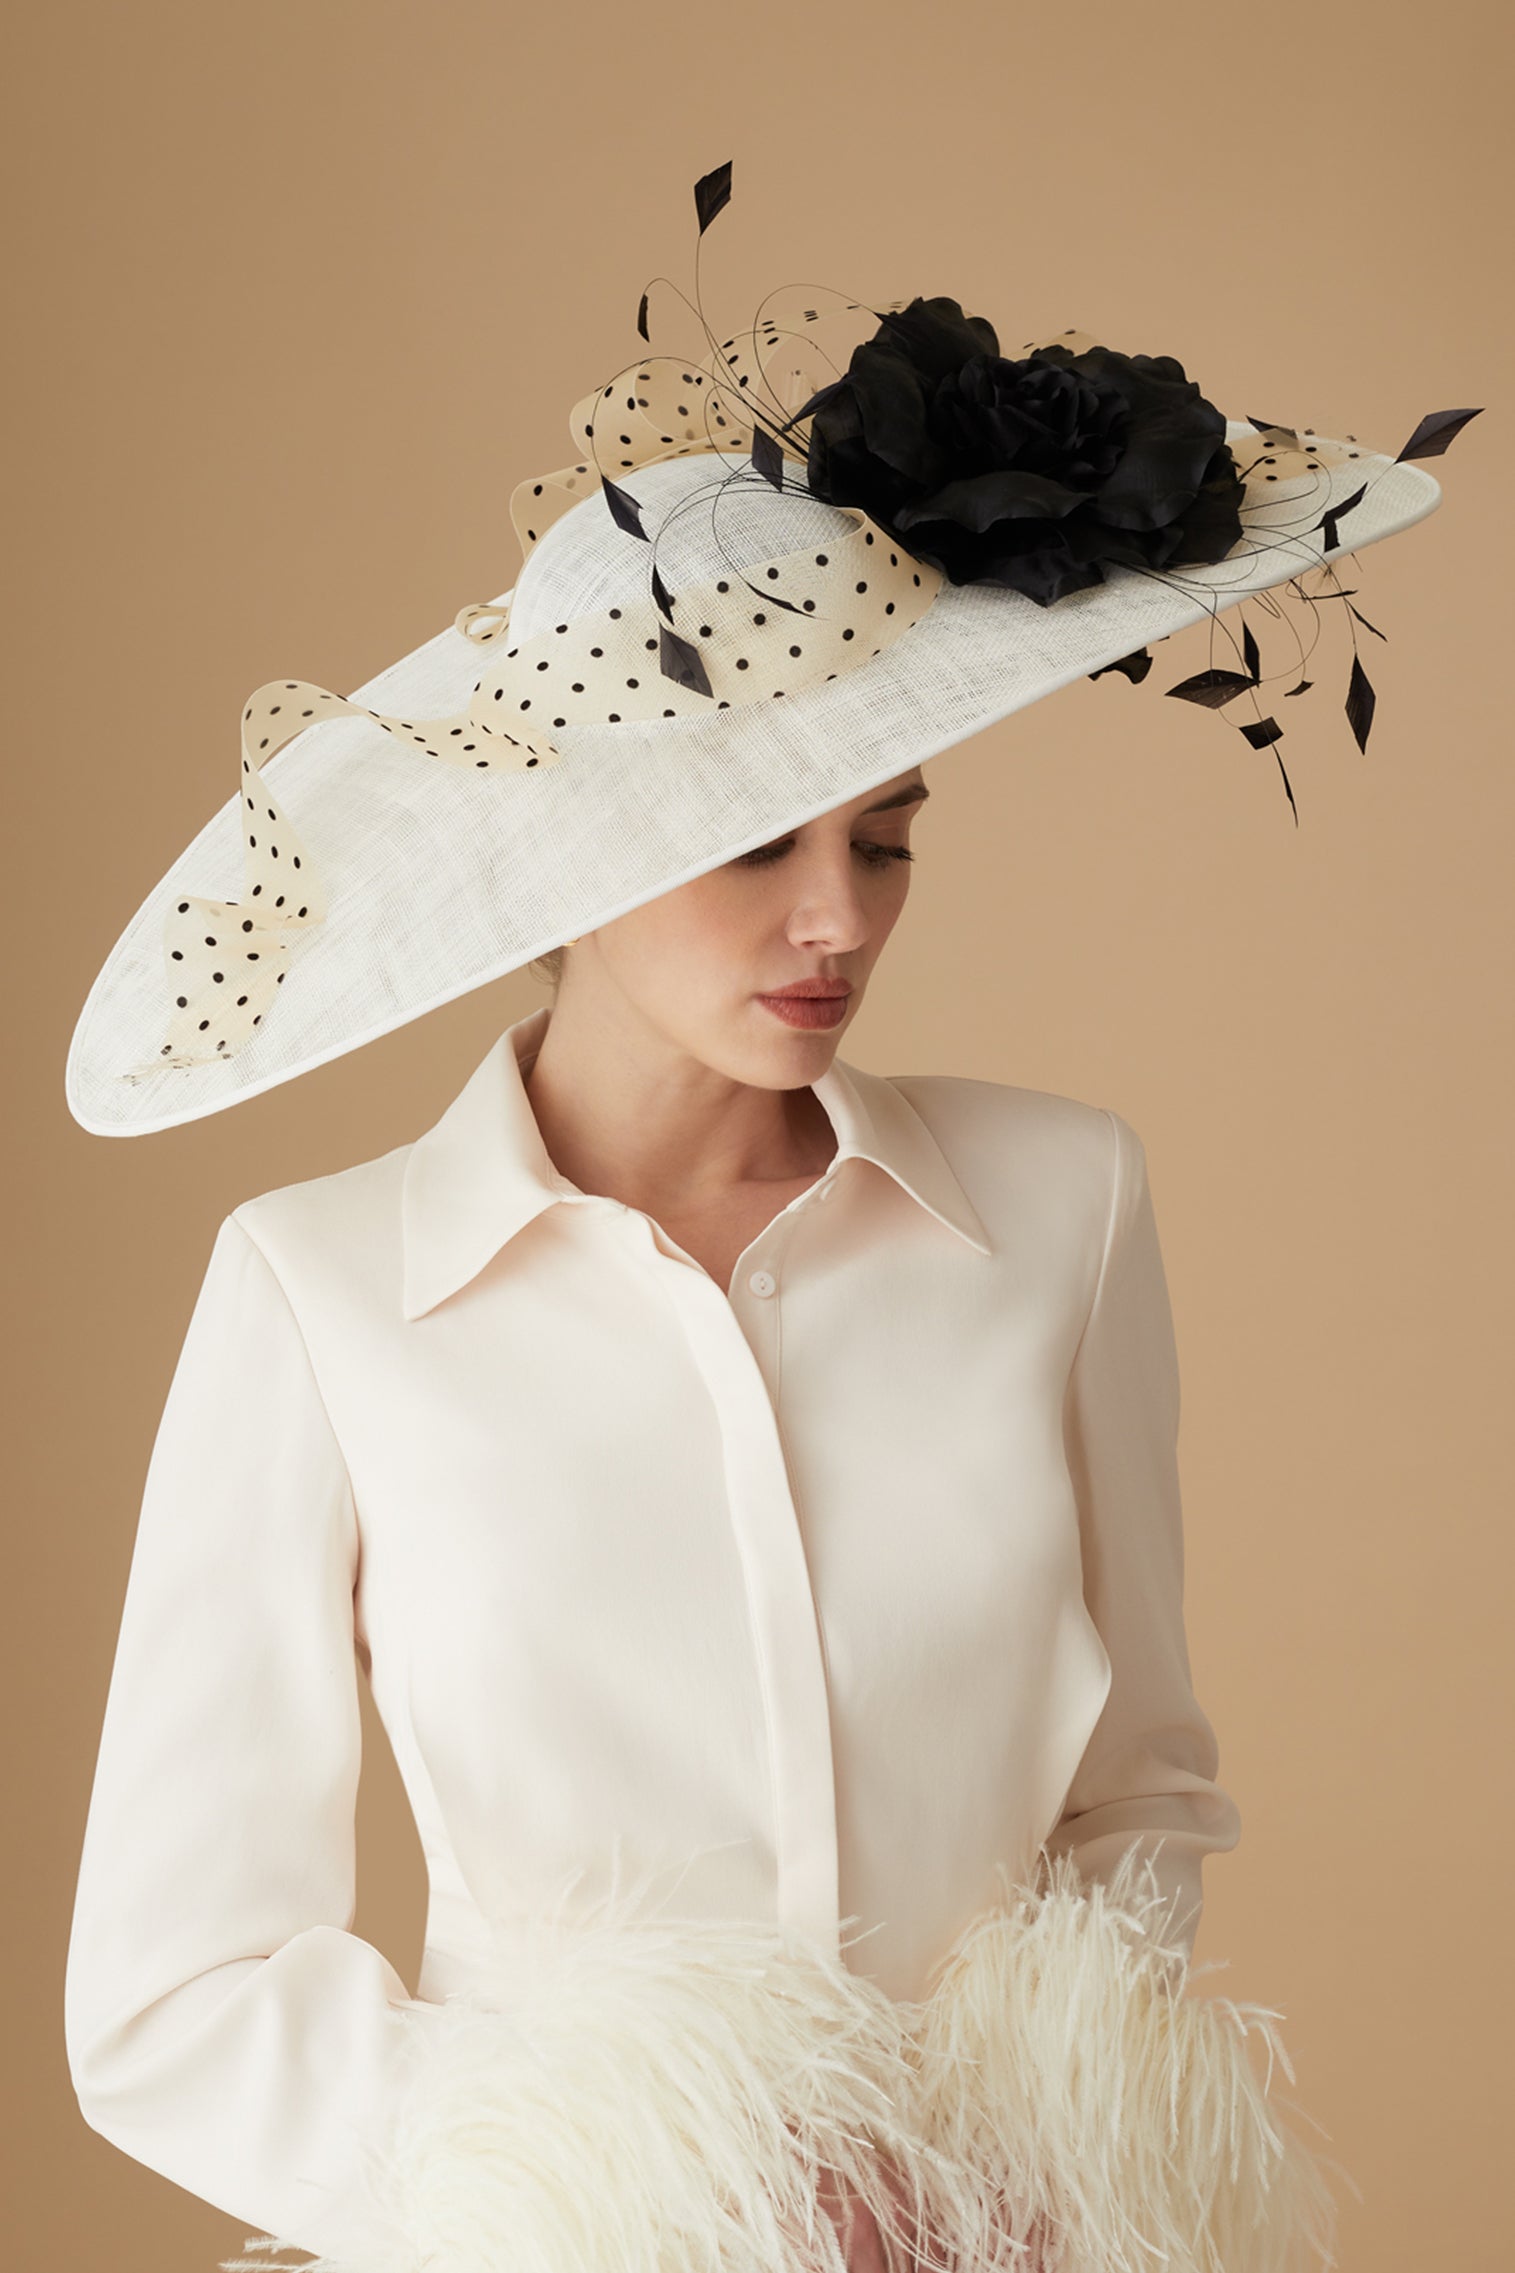 Vanilla White Slice Hat - Women’s Hats - Lock & Co. Hatters London UK